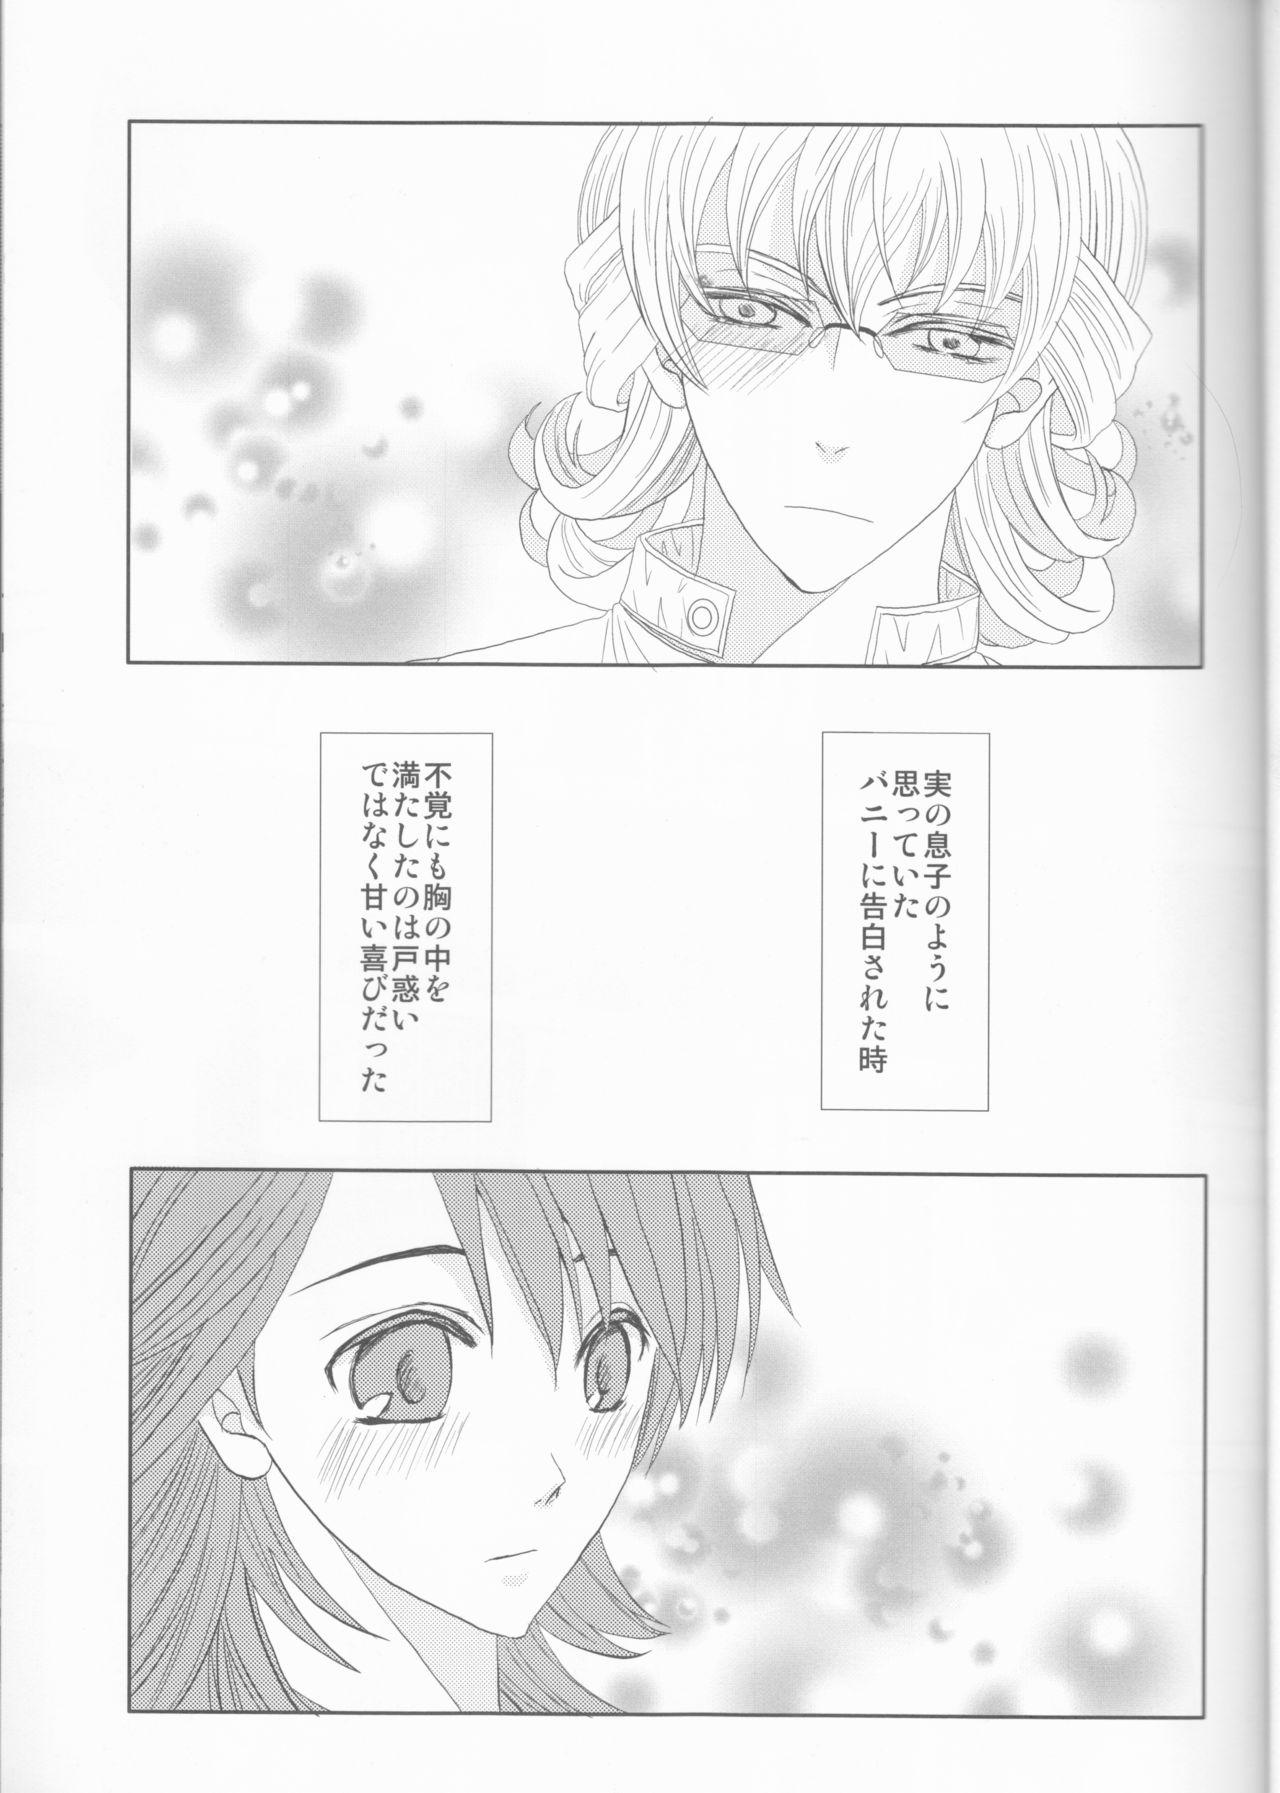 Edging Itsuka wa inaku naru kimi e - Tiger and bunny Tributo - Page 4